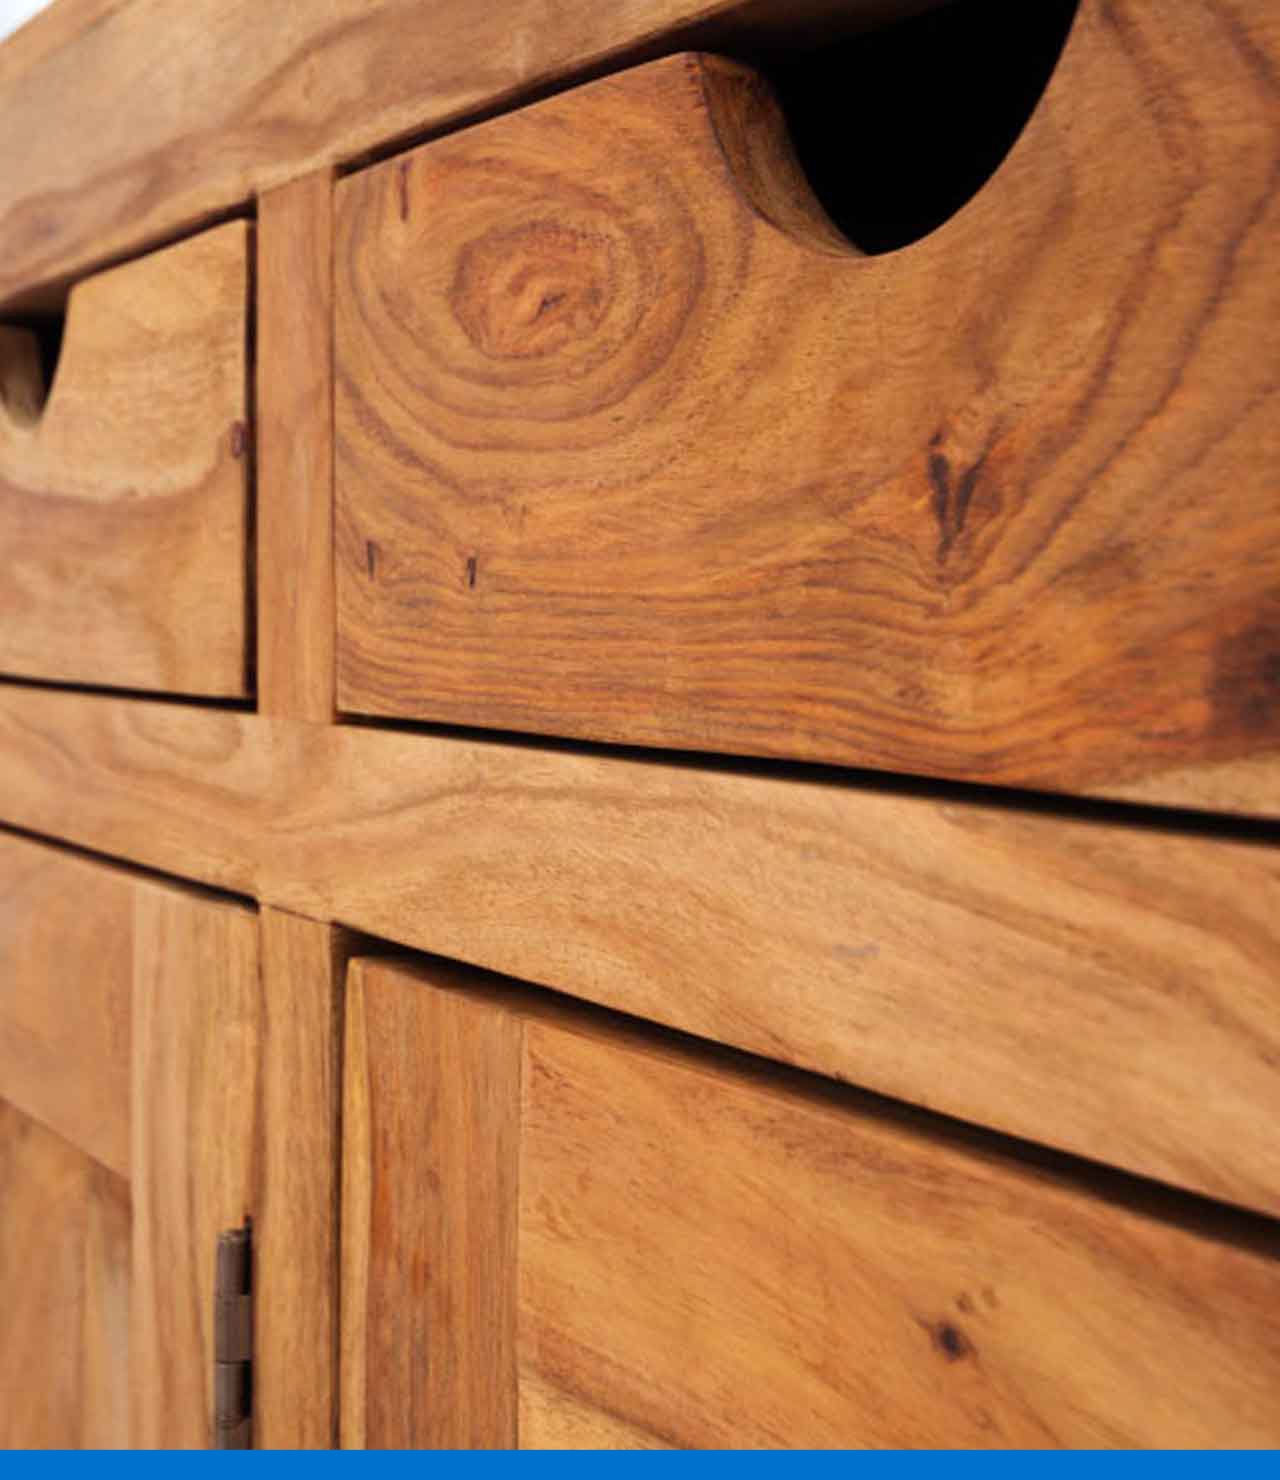 Descubre cómo hacer muebles de madera correctamente